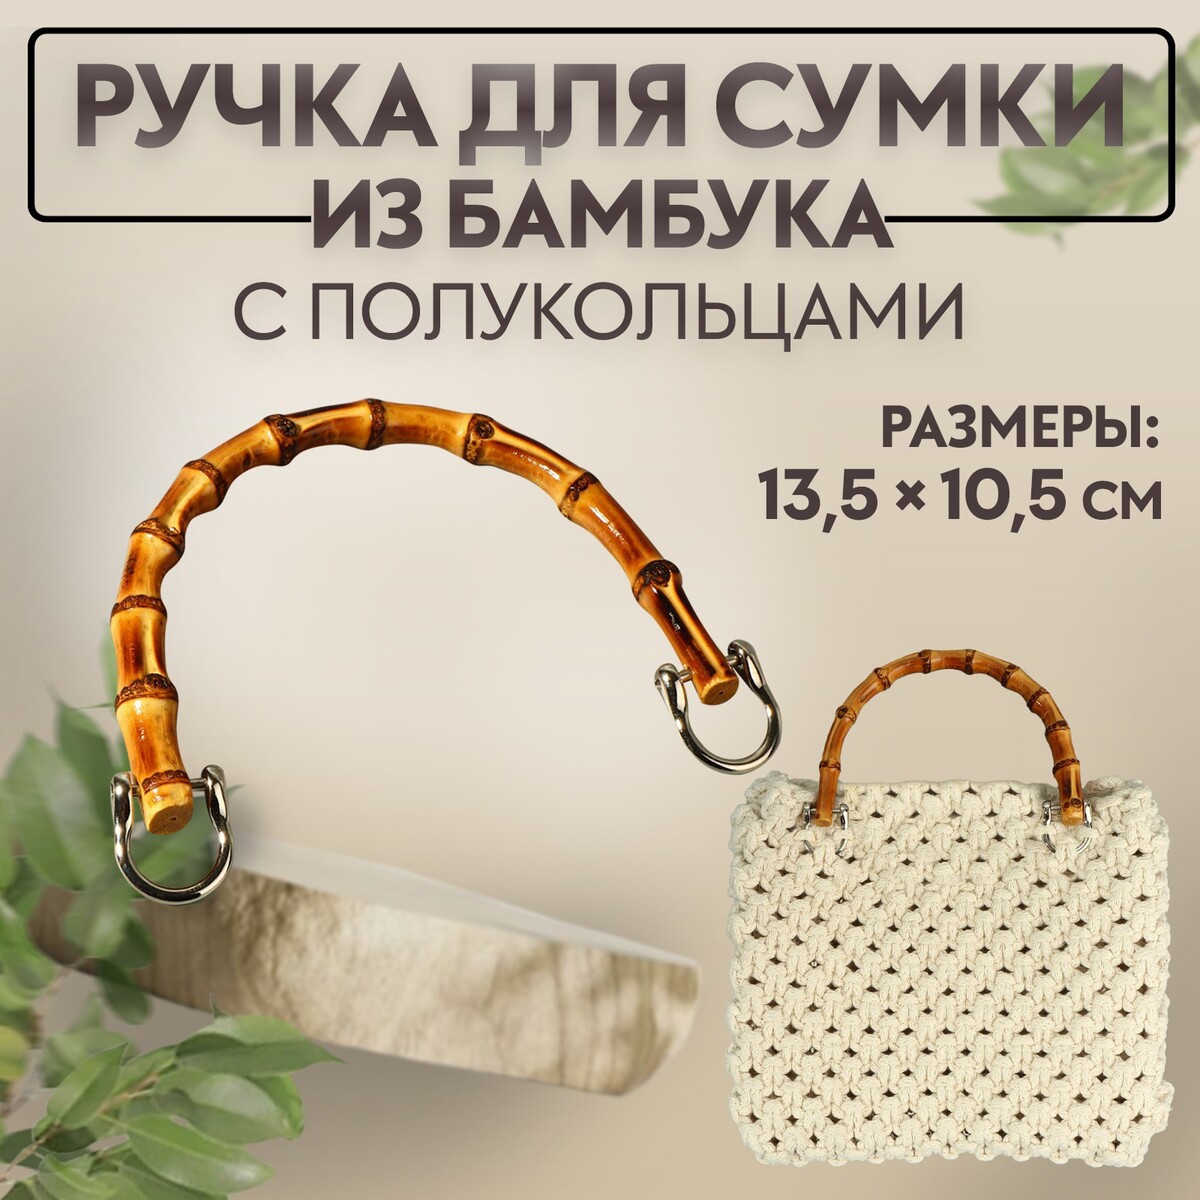 Ручка для сумки, бамбук, с полукольцами, 13,5 × 10,5 см, цвет бежевый/серебряный серебряный шпиль